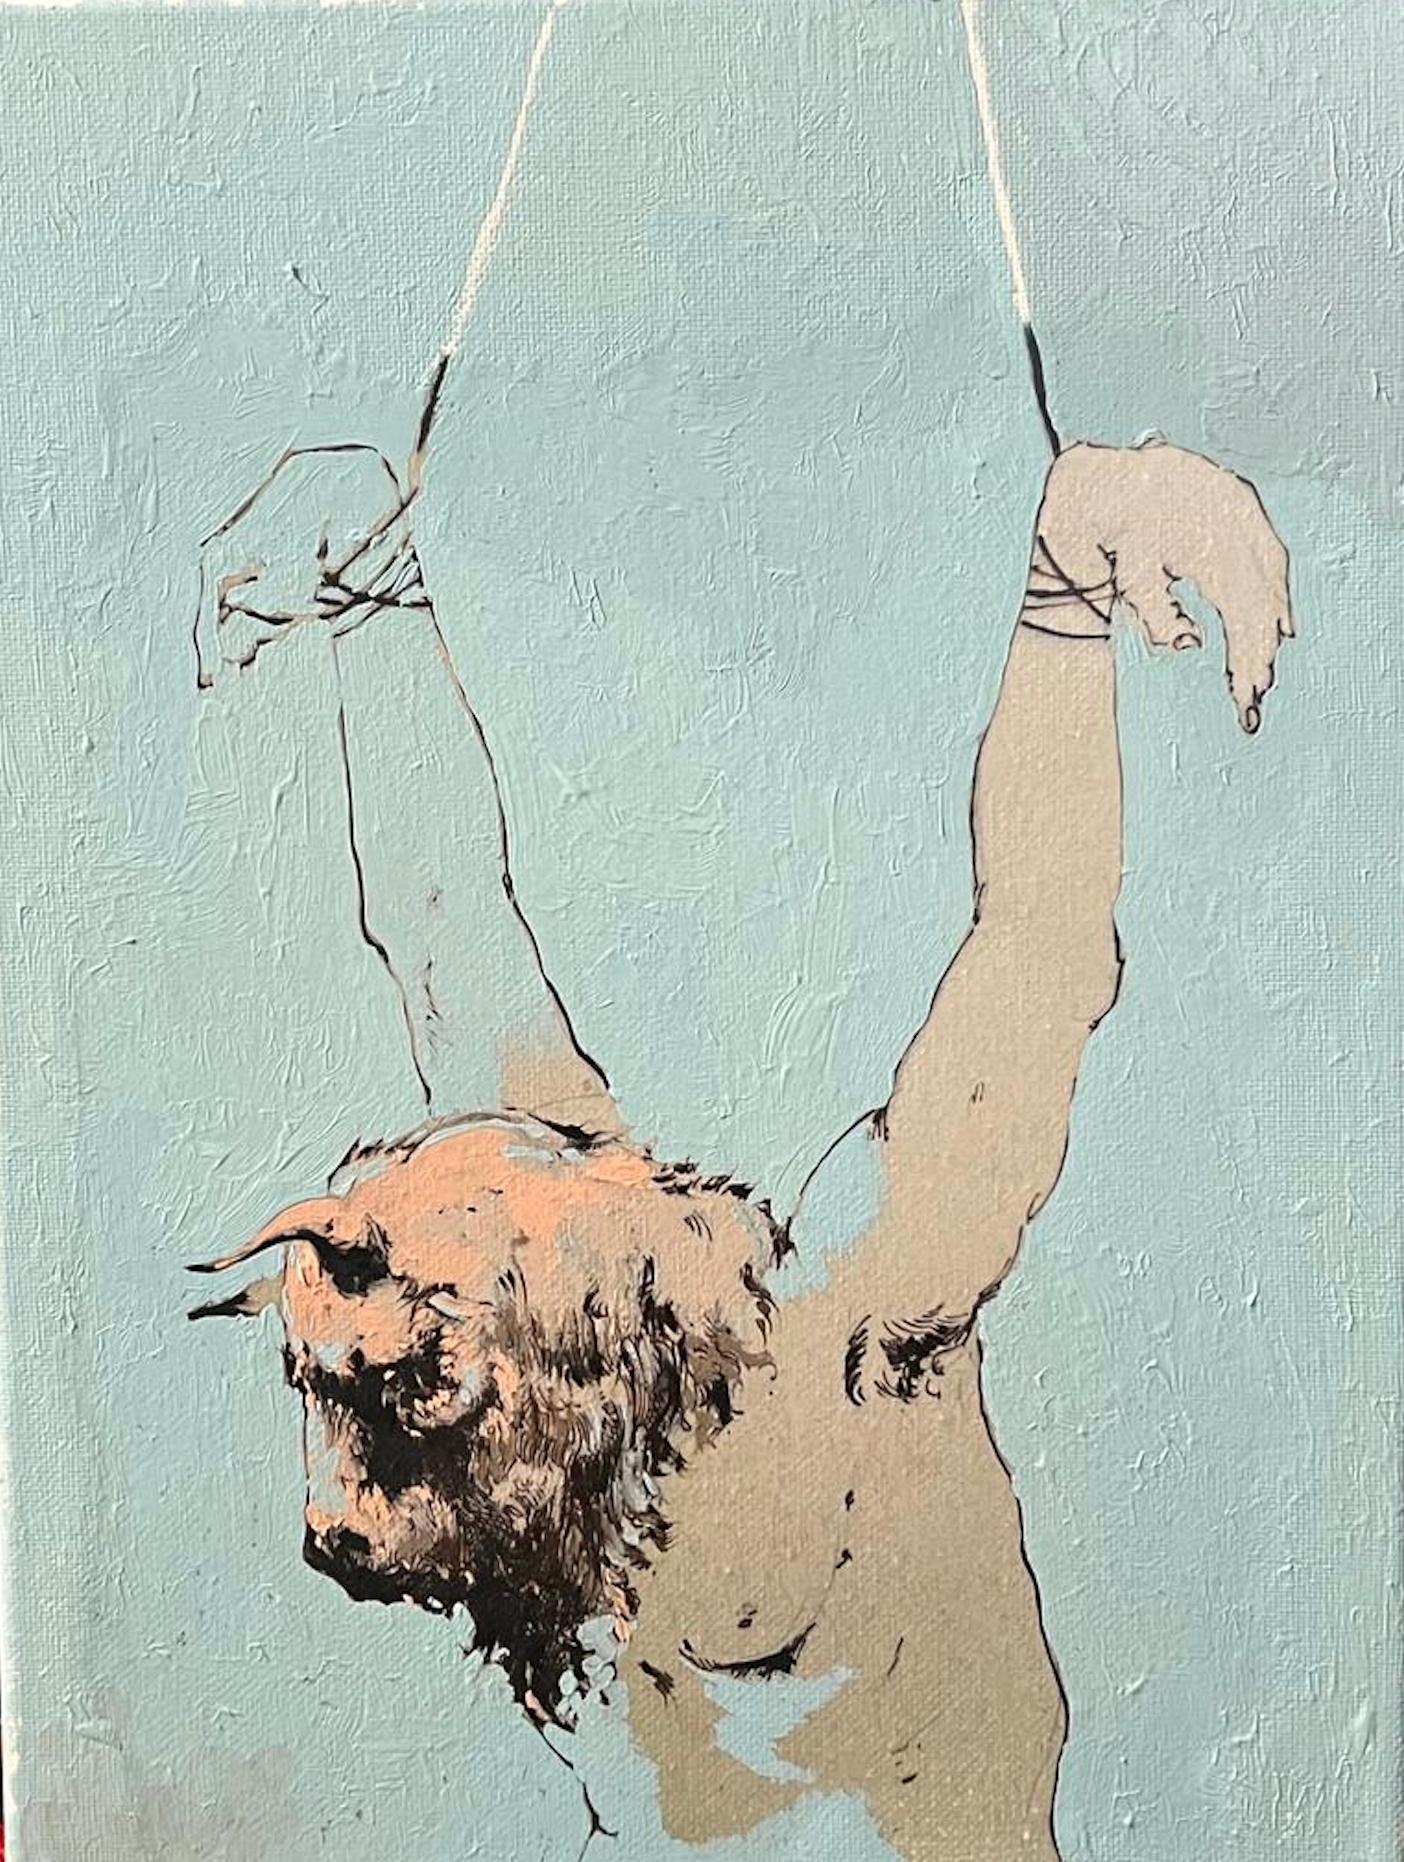 Gemälde eines Minotauren, Original Ölgemälde auf Leinwand des kubanischen Künstlers